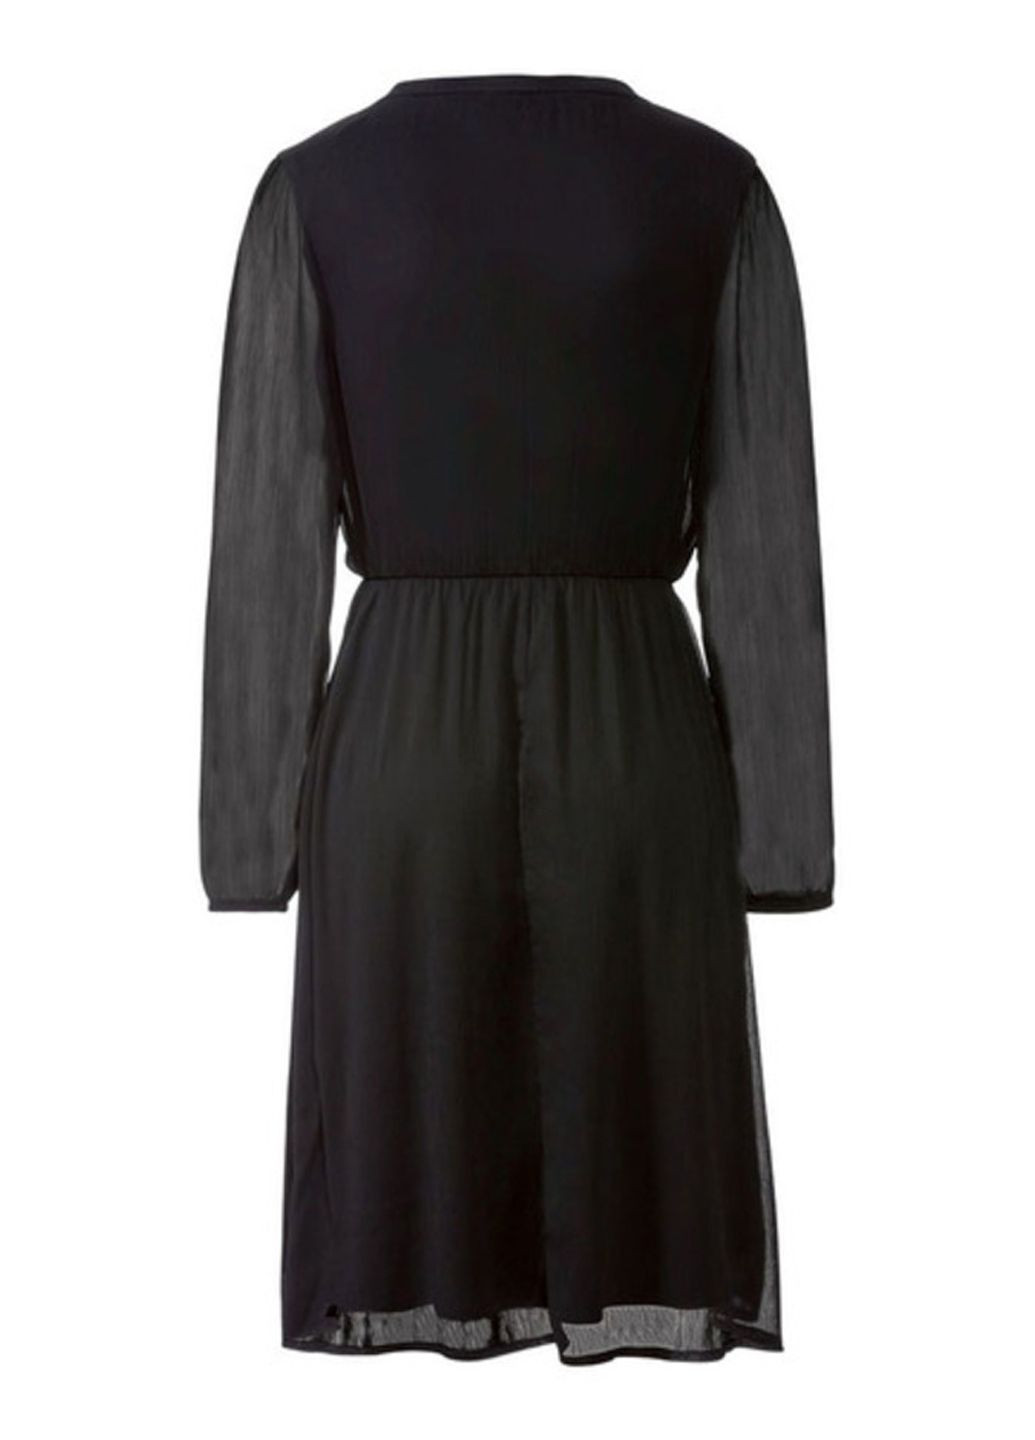 Черное платья женские (2шт) Esmara